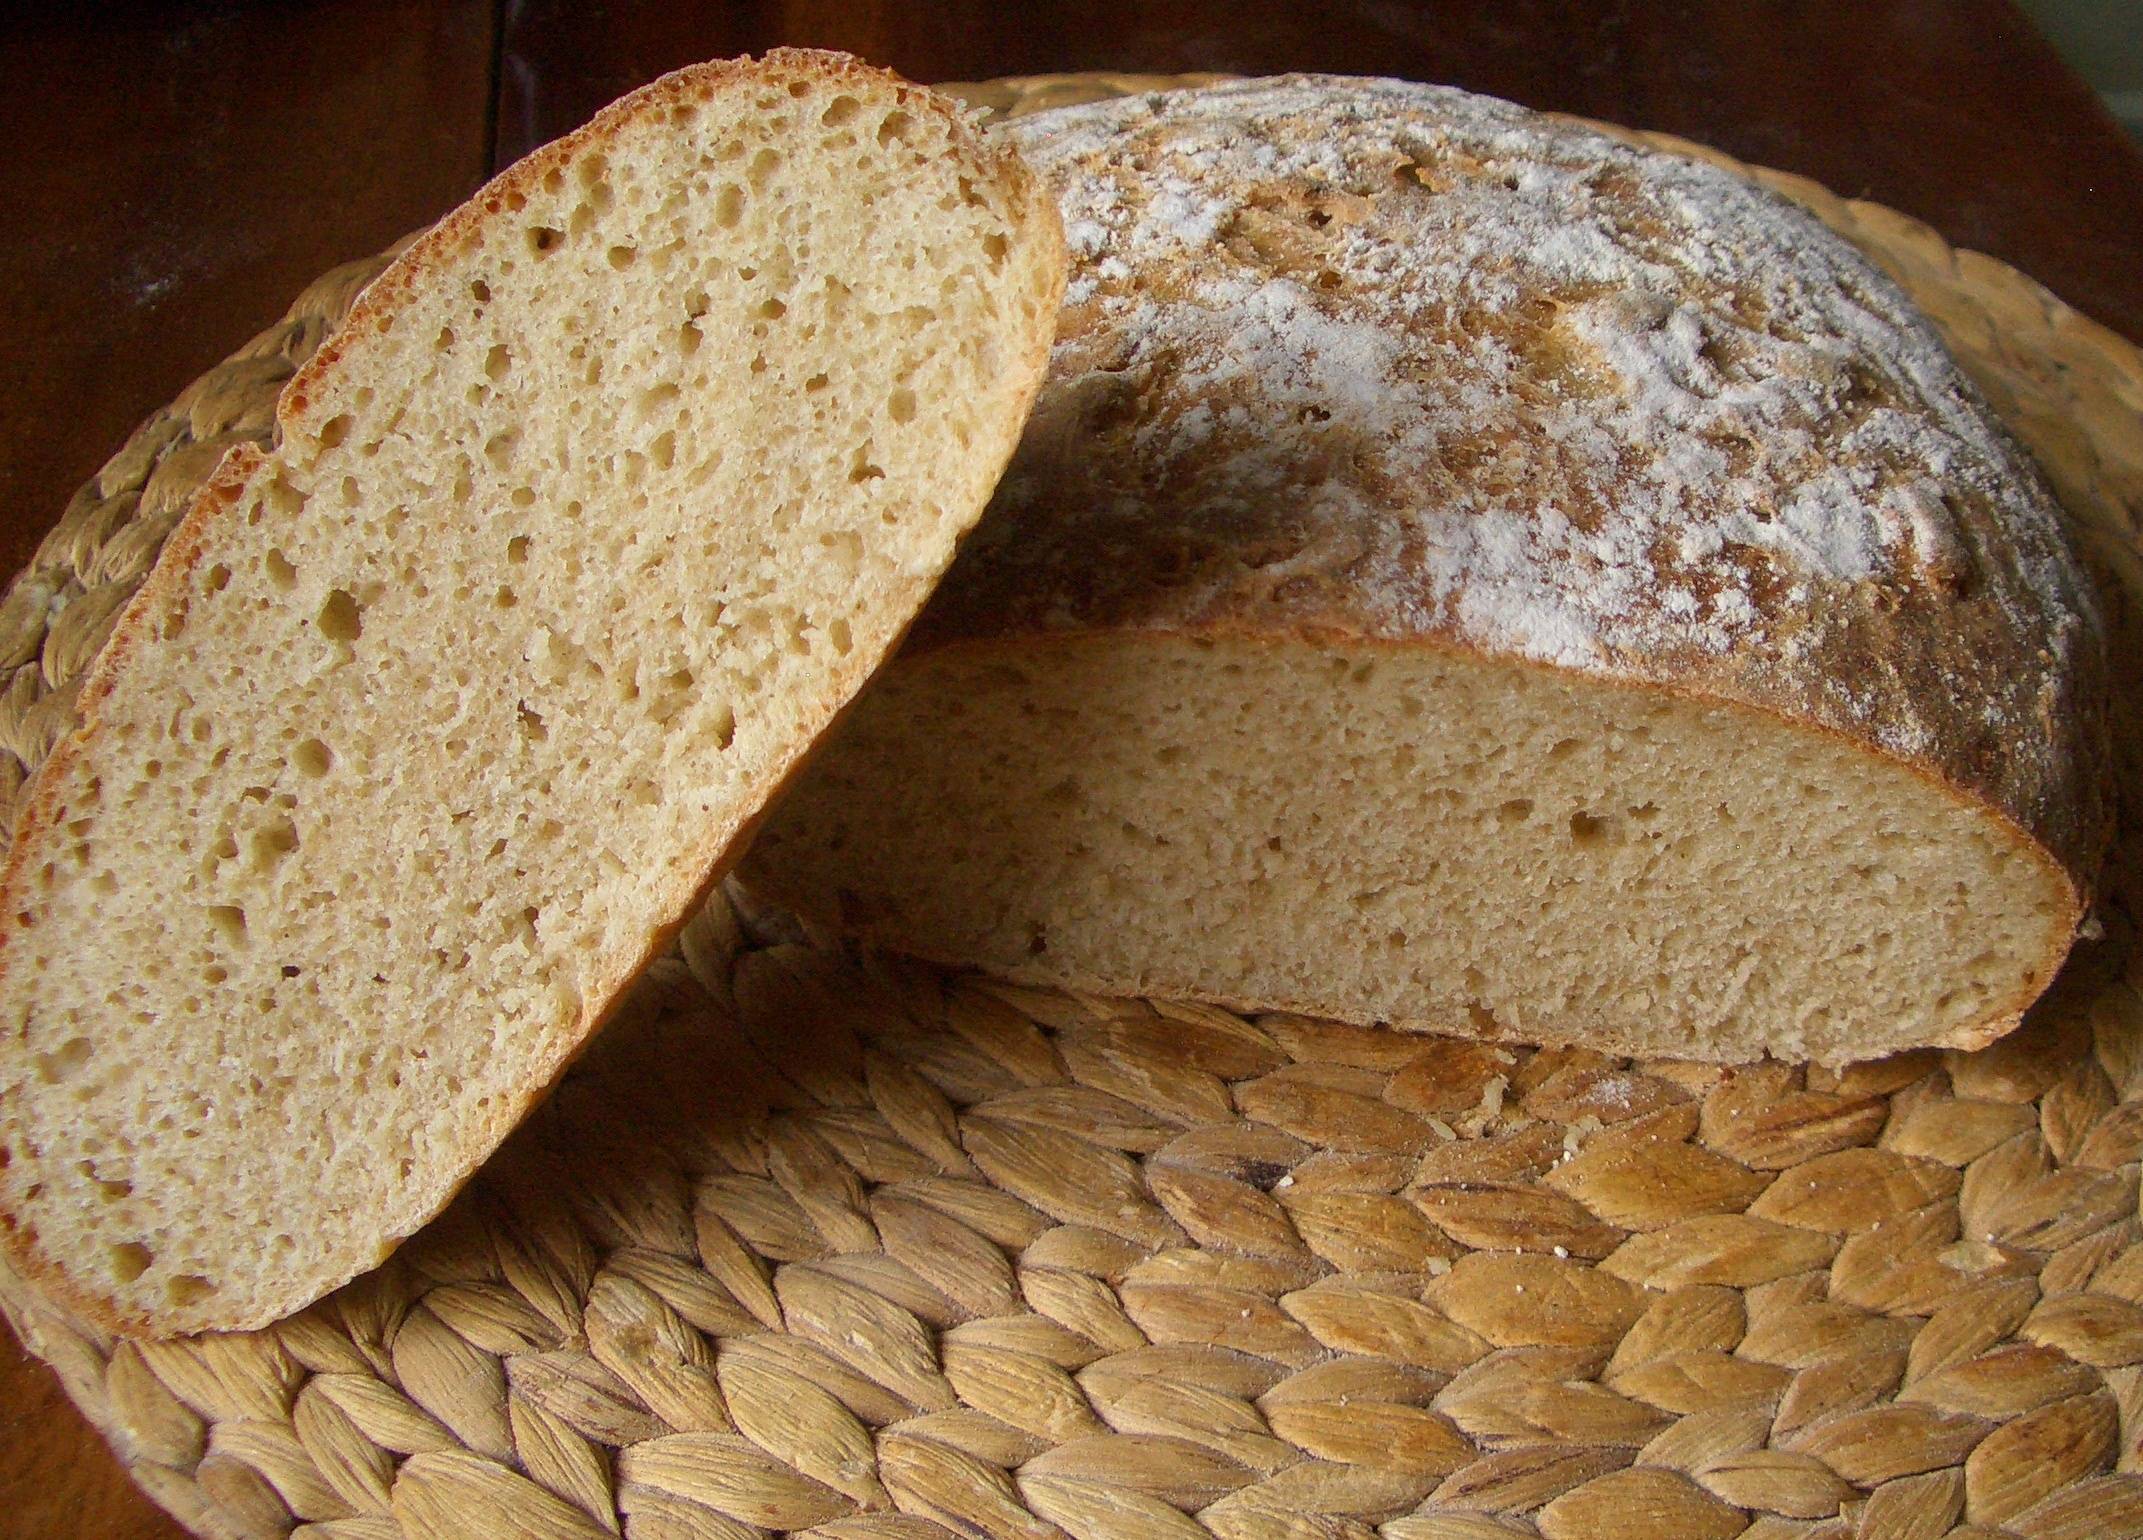 Ржаной хлеб в хлебопечке - 14 домашних вкусных рецептов приготовления